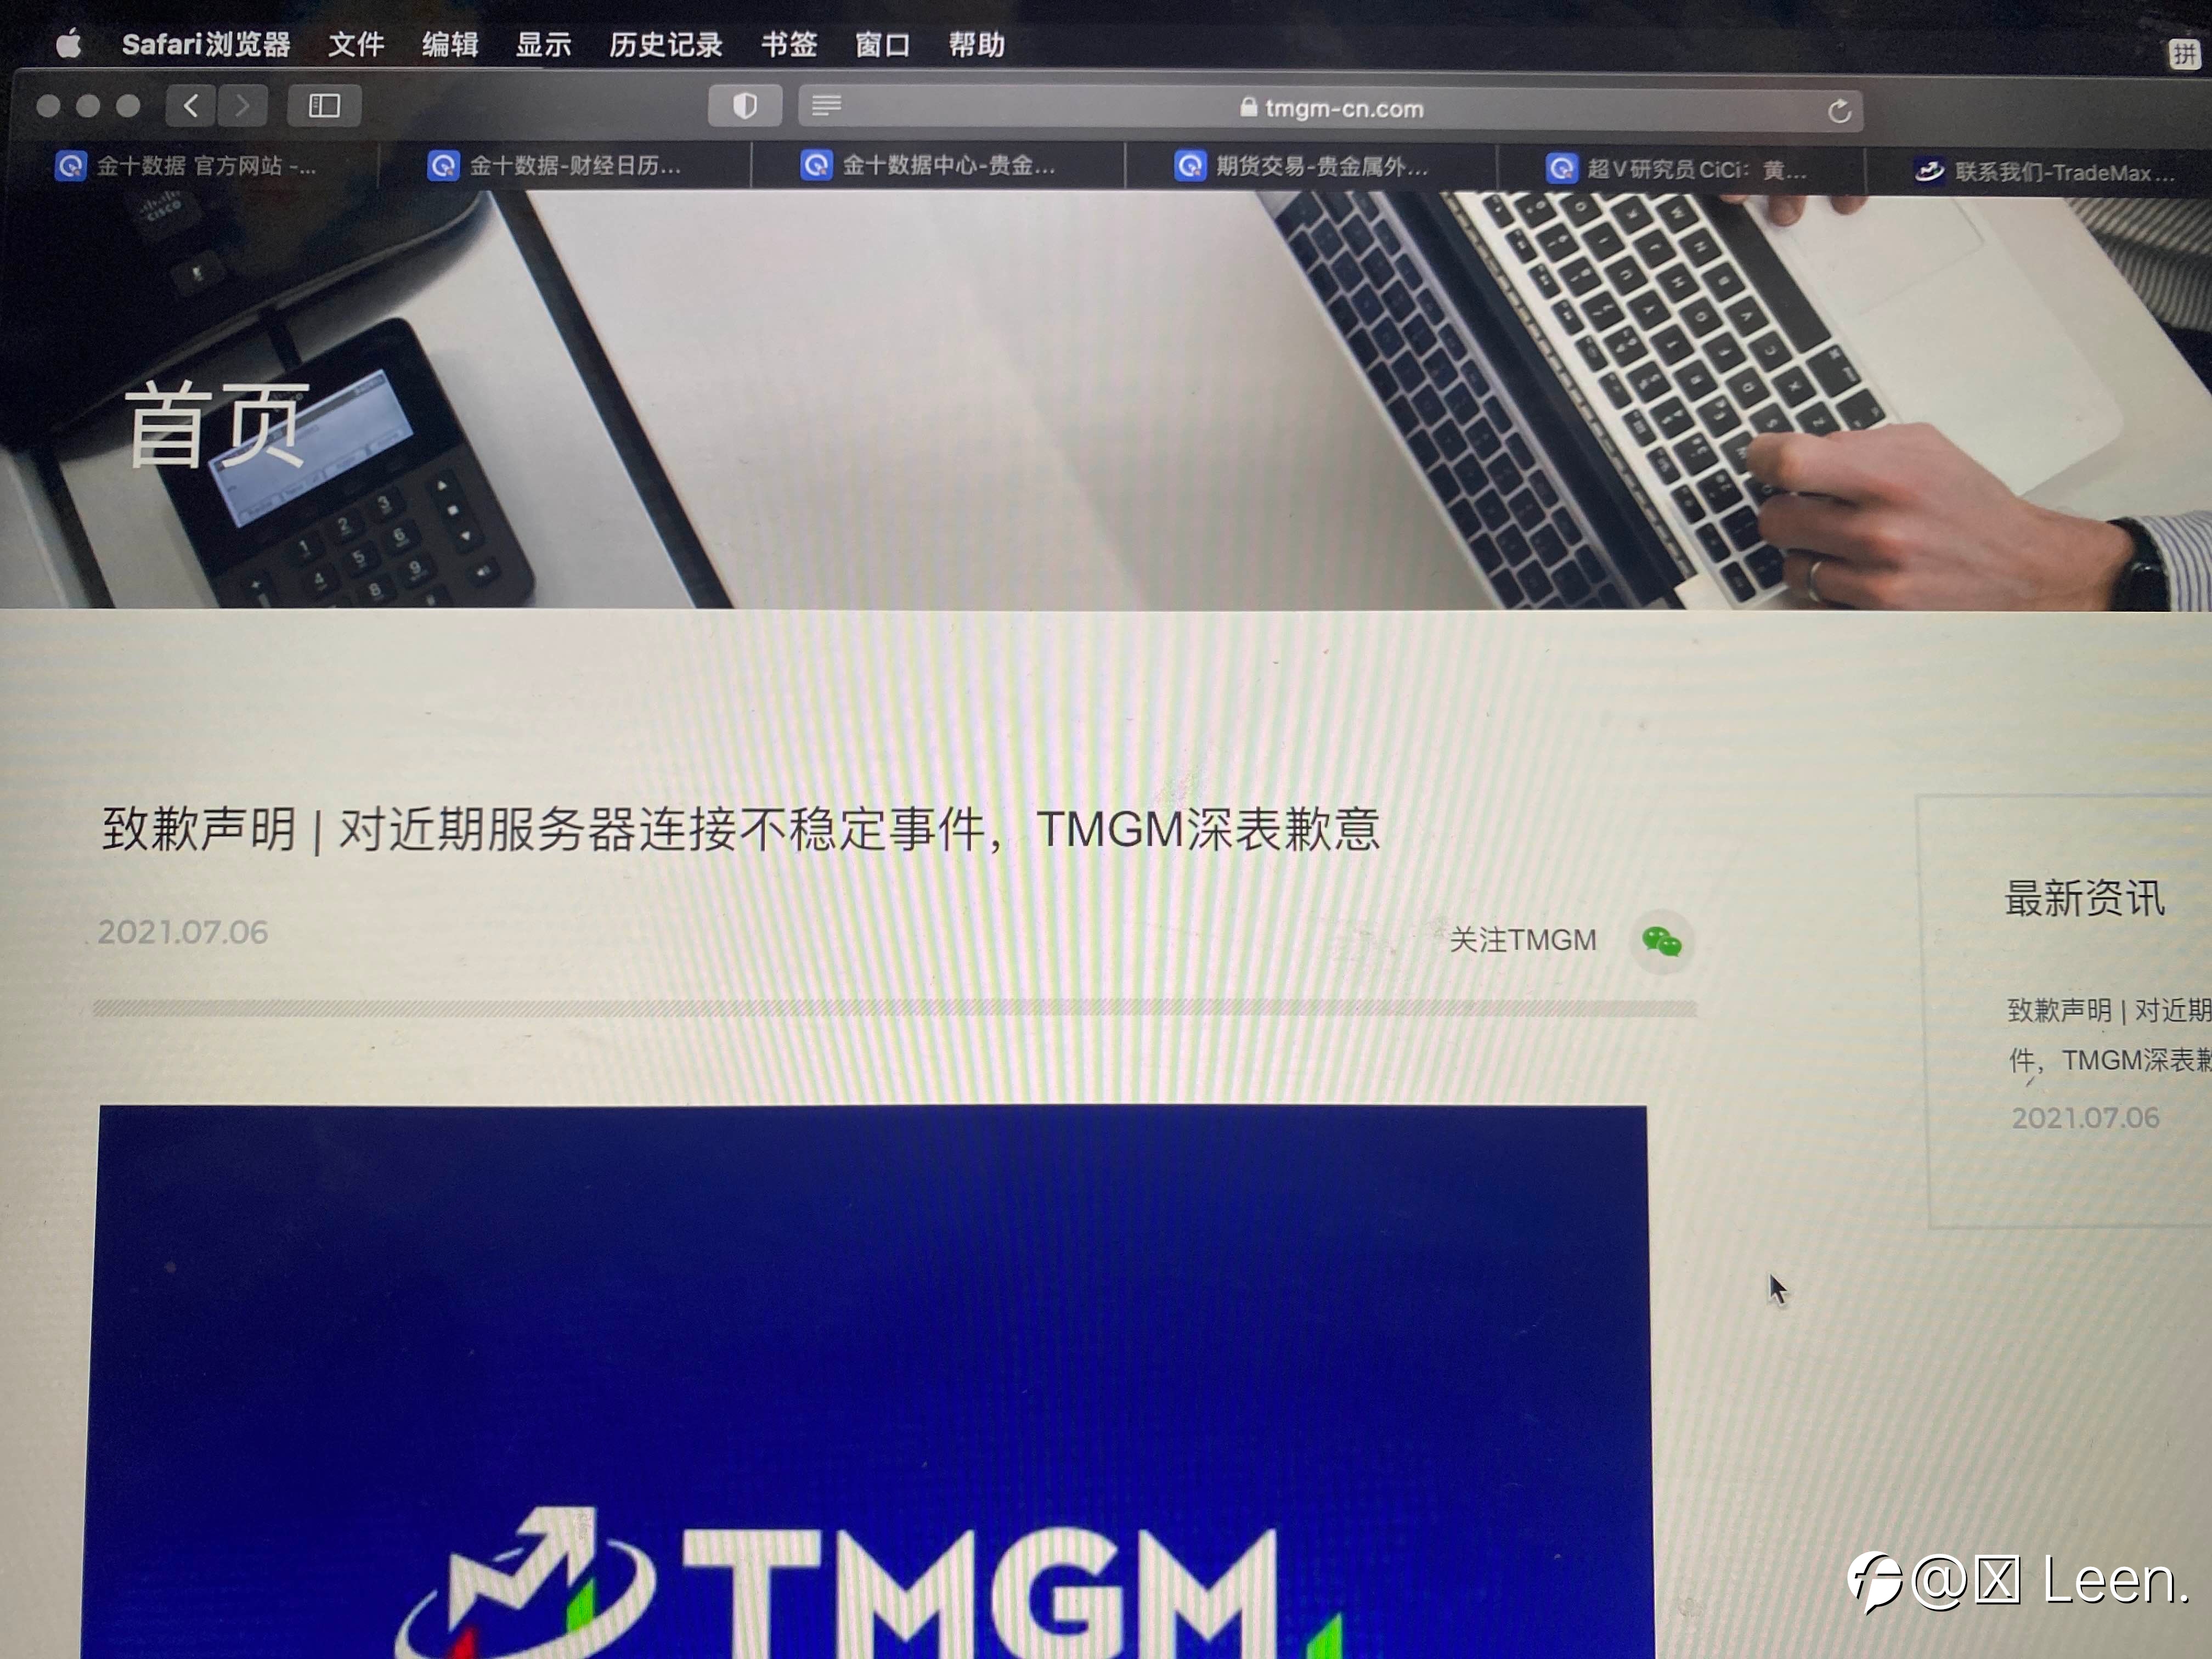 TMGM 平台